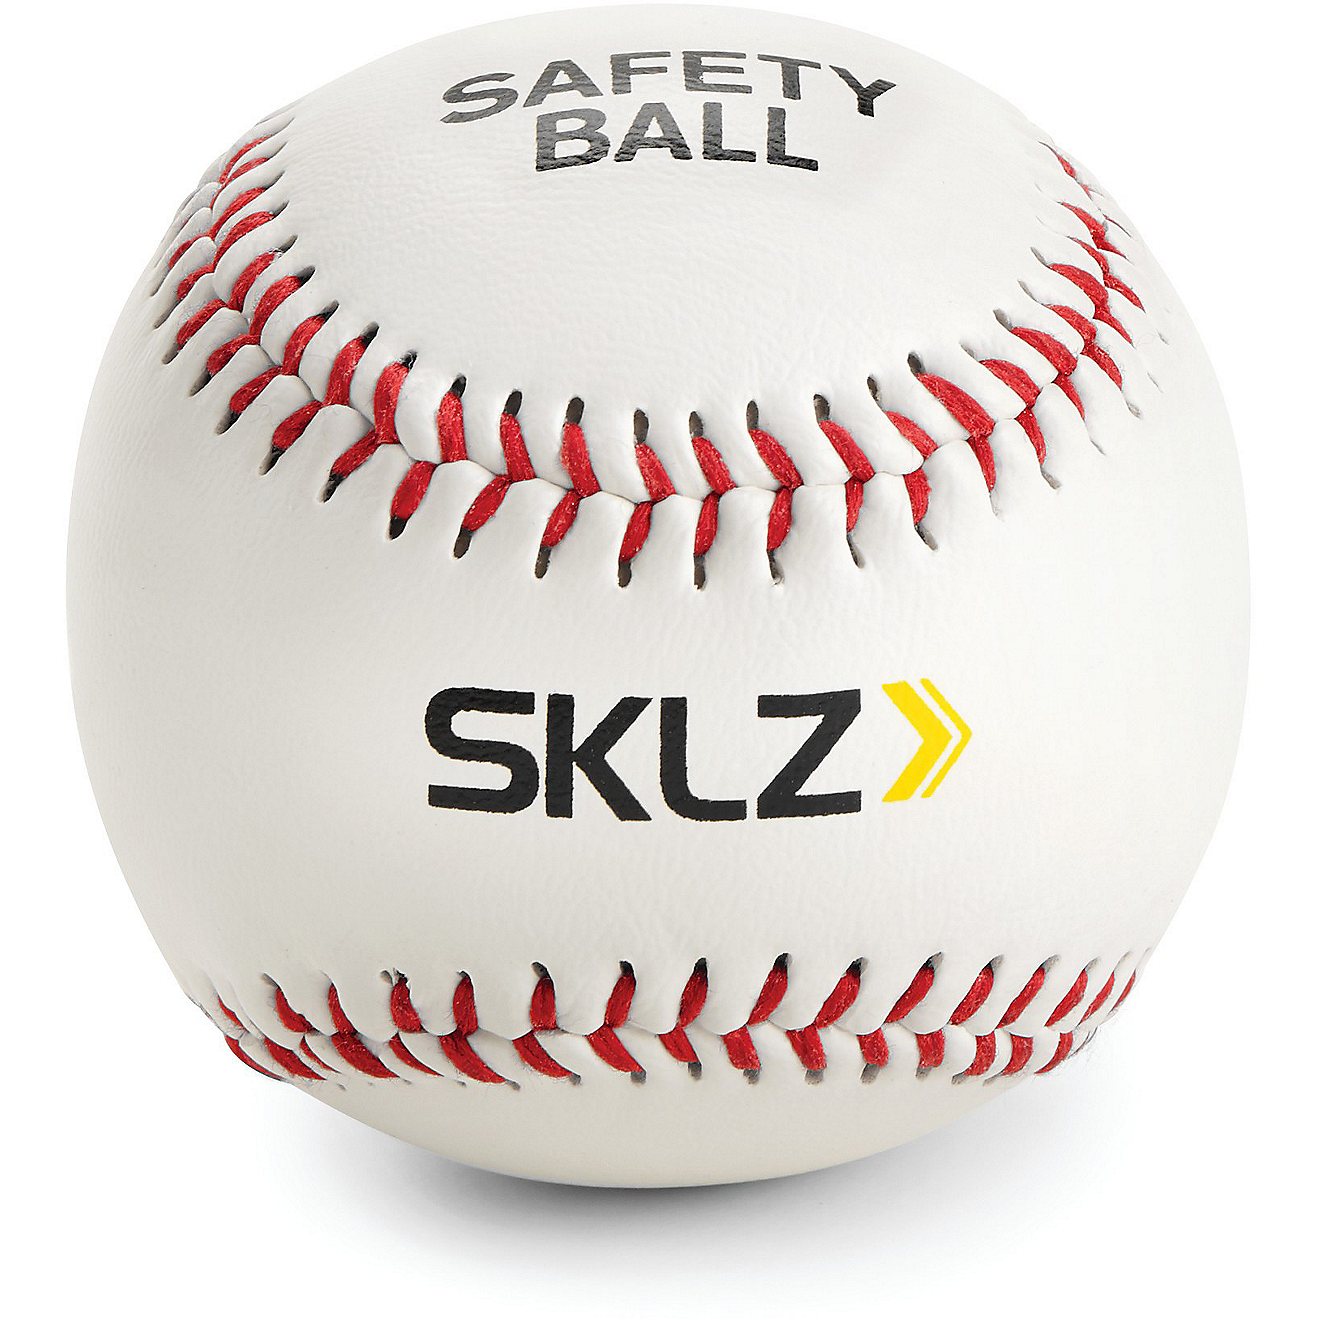 SKLZ Safety Balls 2 Pack                                                                                                         - view number 1